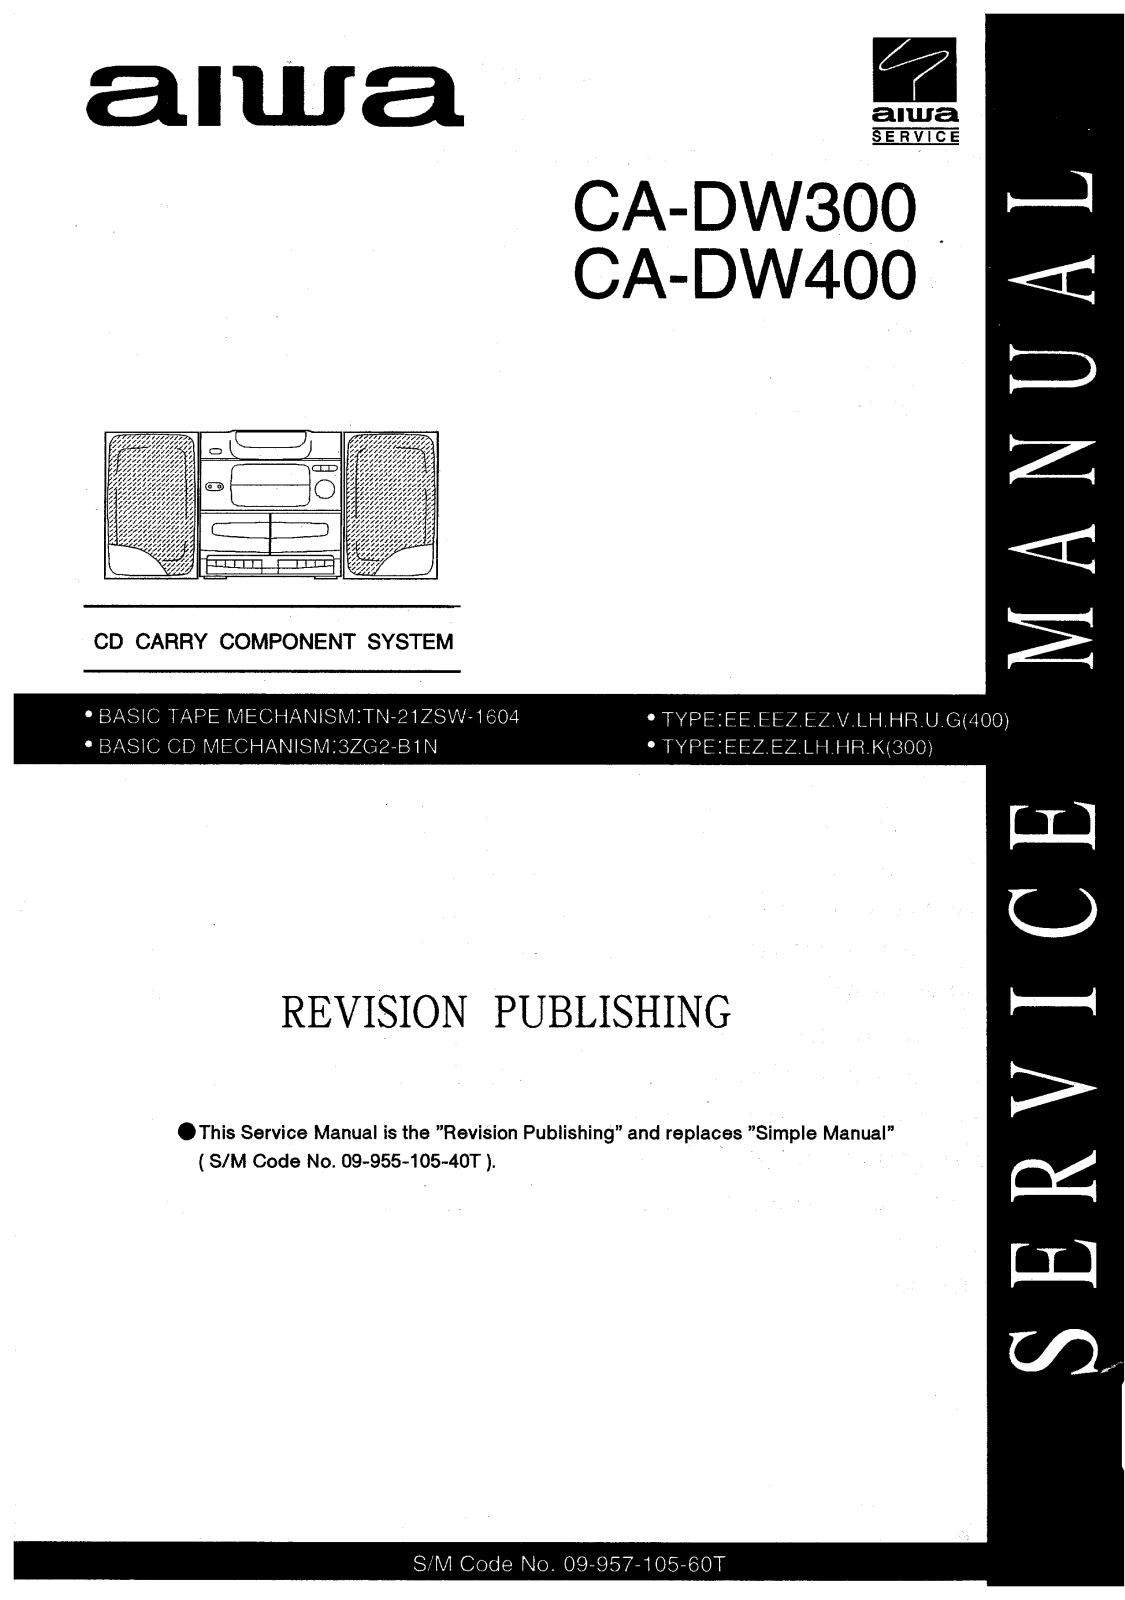 Aiwa CA DW300, CA DW400 Service Manual